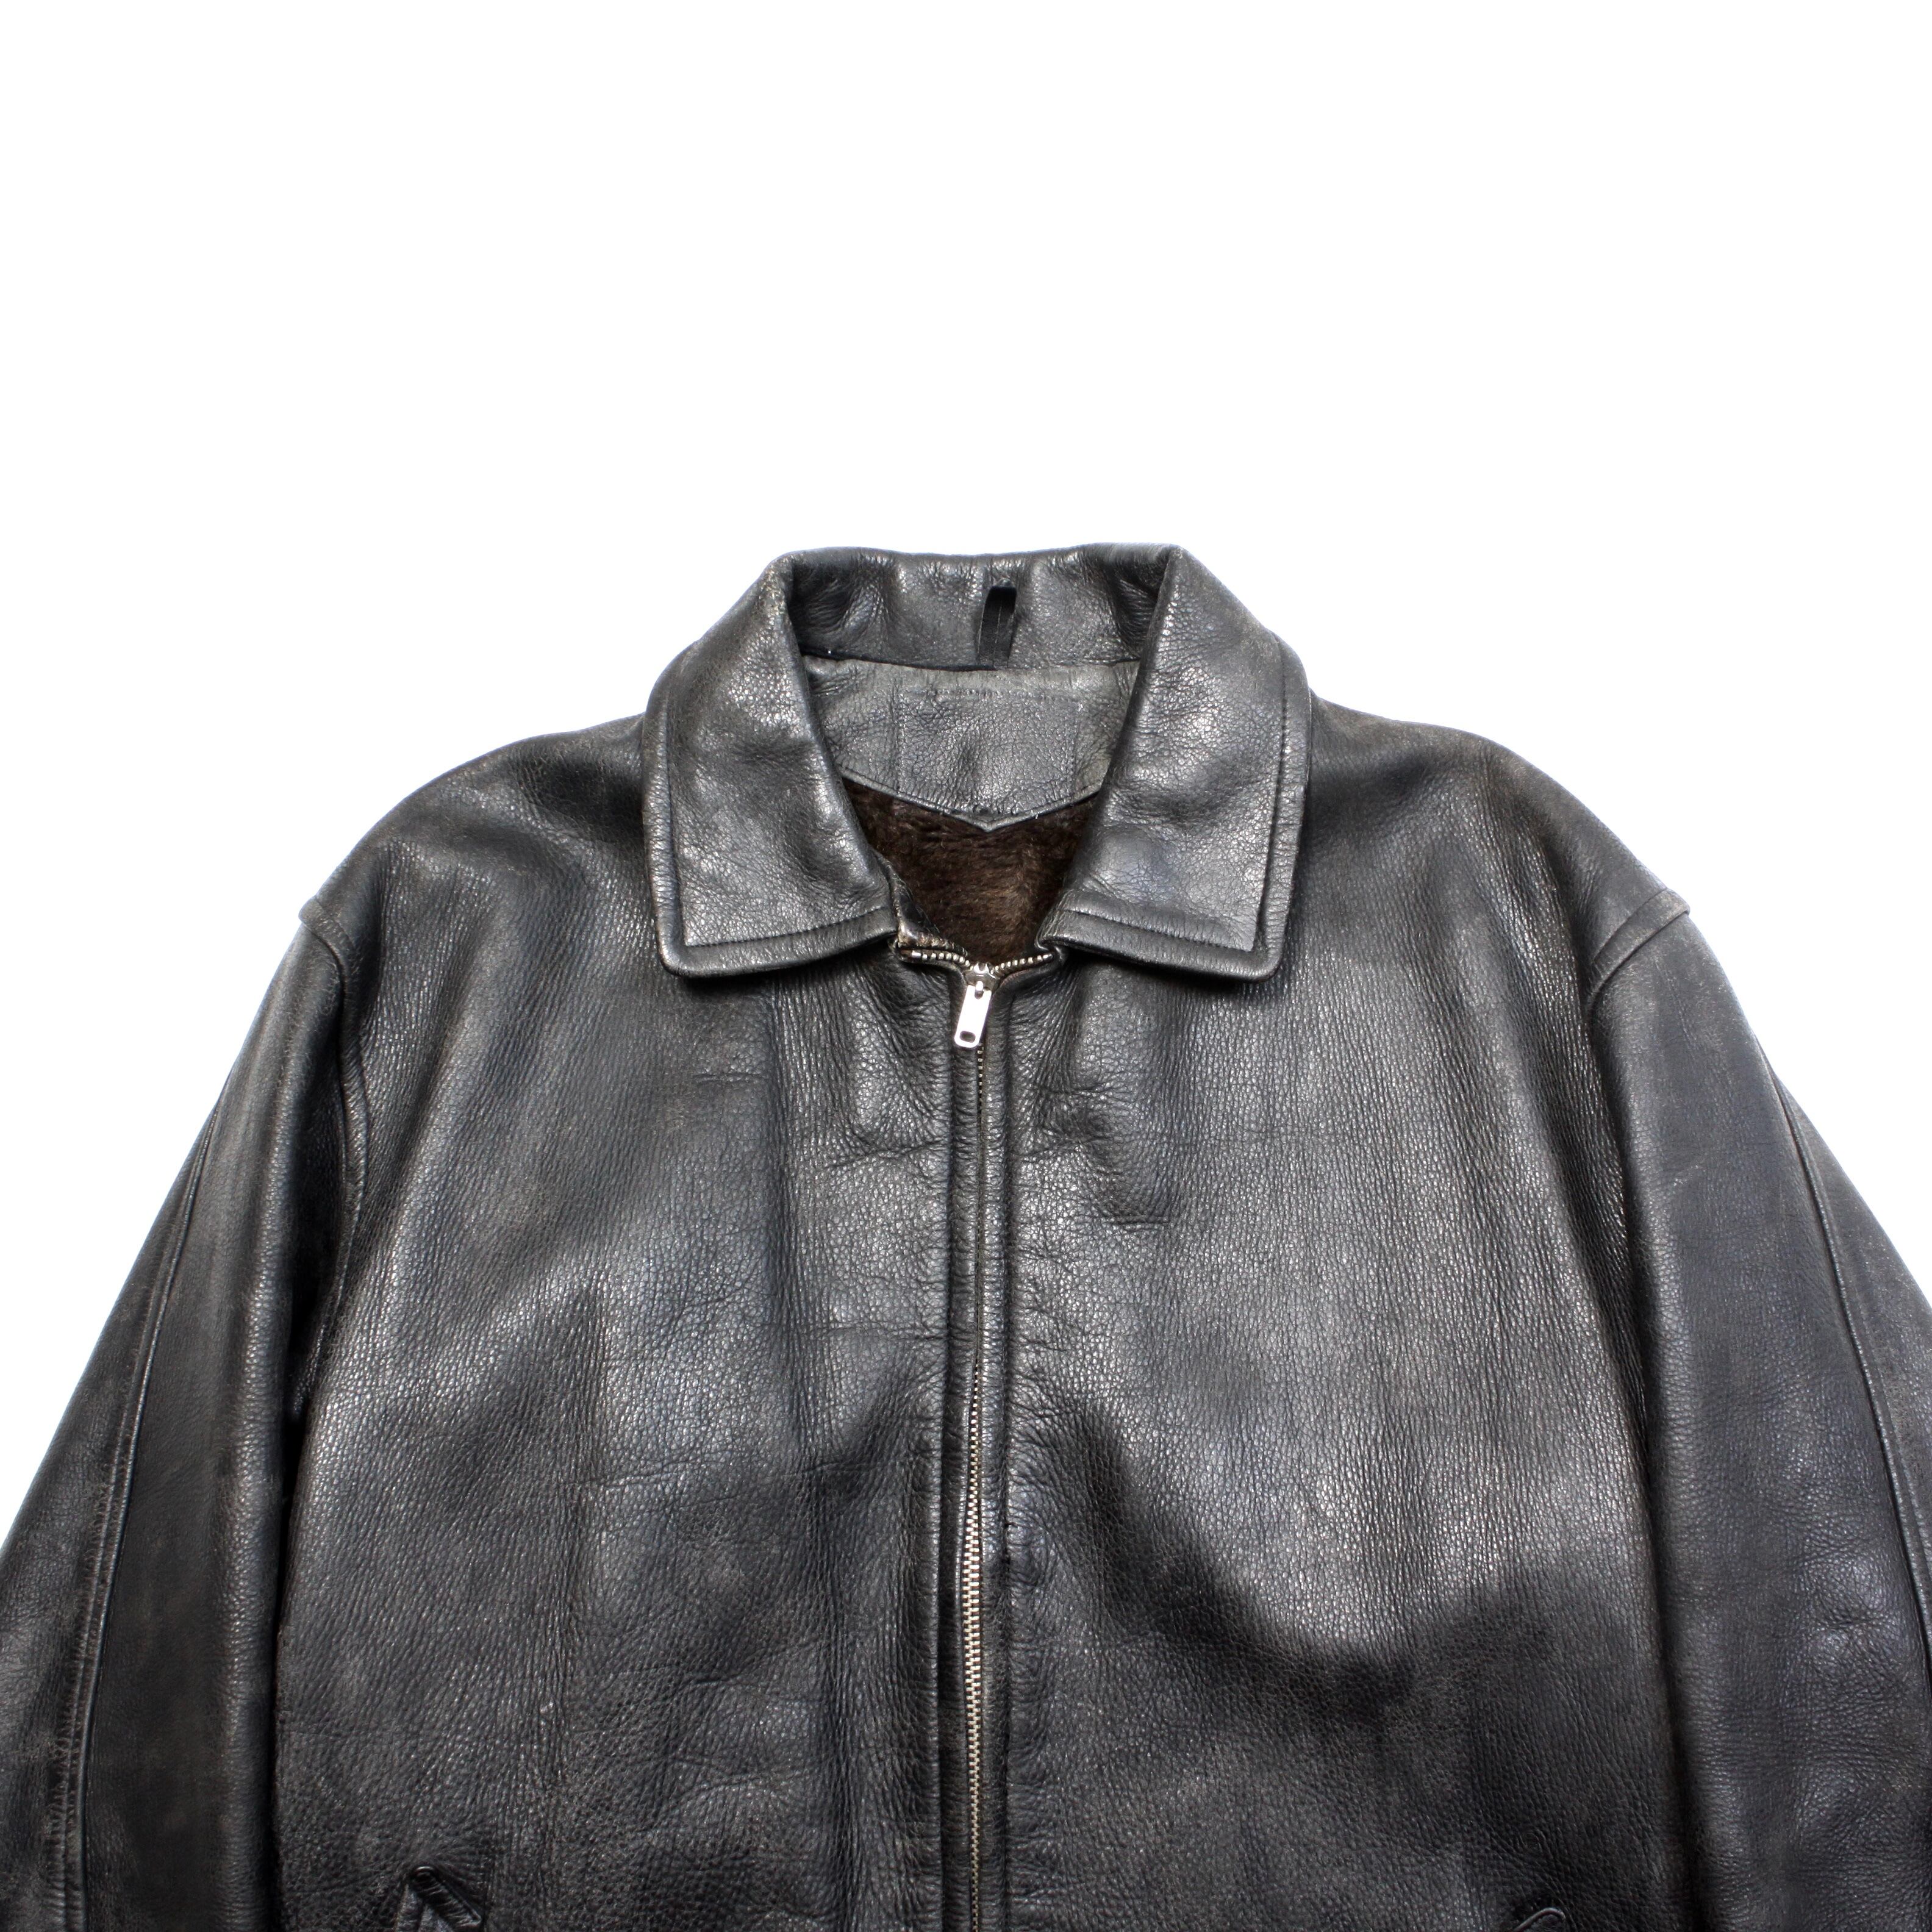 . 's leather sport coat ブラック シボ革 レザージャケット